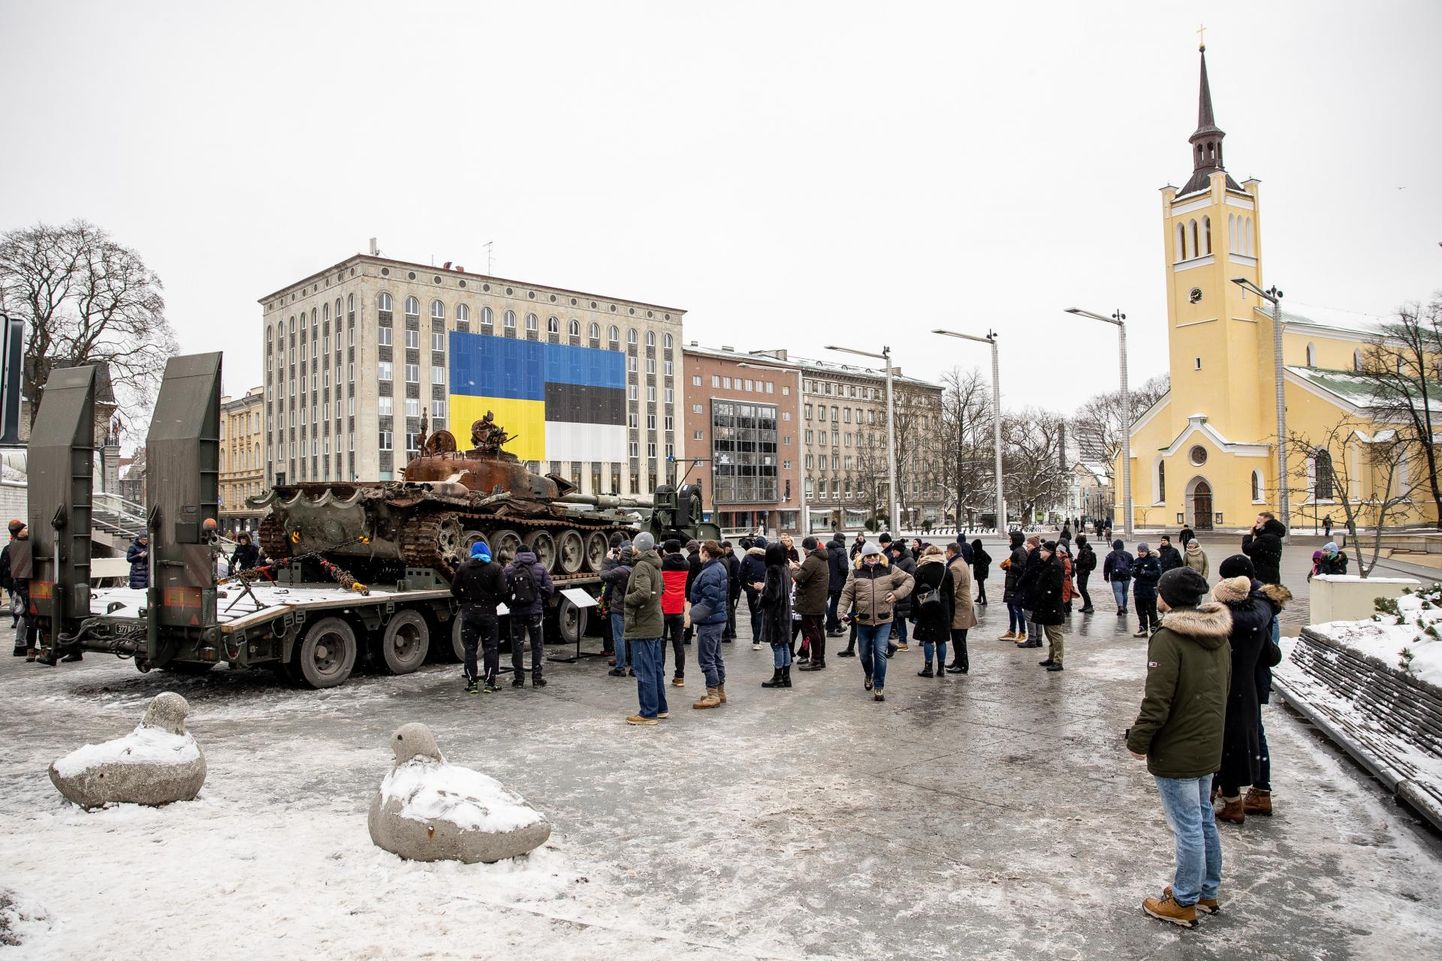 Танк, выставленный в сейчас на площади Вабадузе в Таллинне, привлек и провокаторов, и в полицию. В полицию поступило уже несколько тревожных звонков.